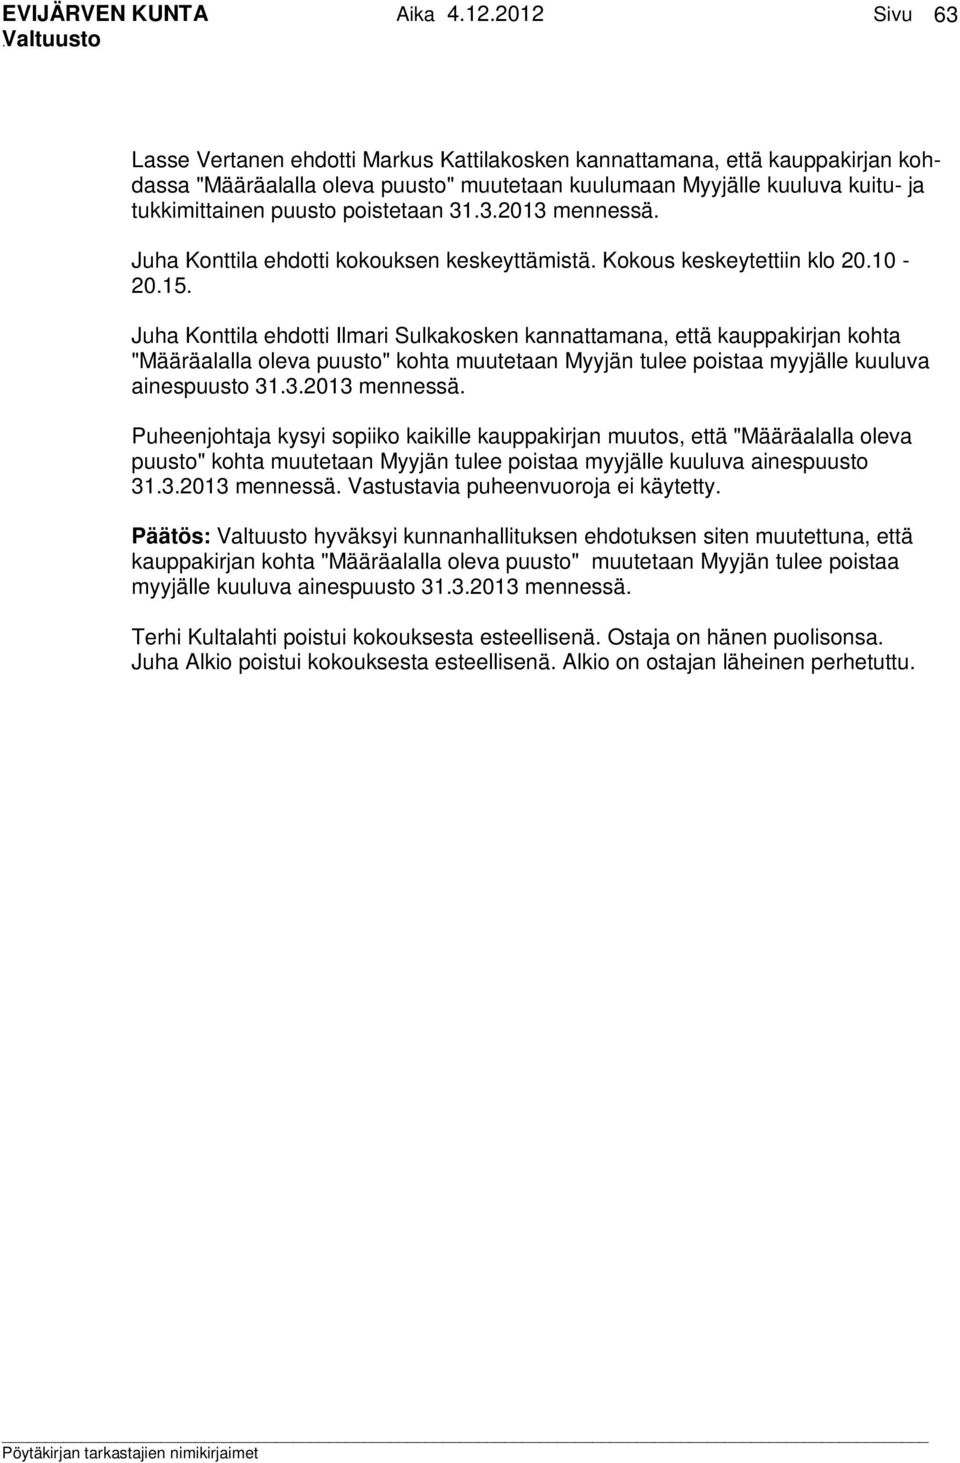 Juha Konttila ehdotti Ilmari Sulkakosken kannattamana, että kauppakirjan kohta "Määräalalla oleva puusto" kohta muutetaan Myyjän tulee poistaa myyjälle kuuluva ainespuusto 31.3.2013 mennessä.